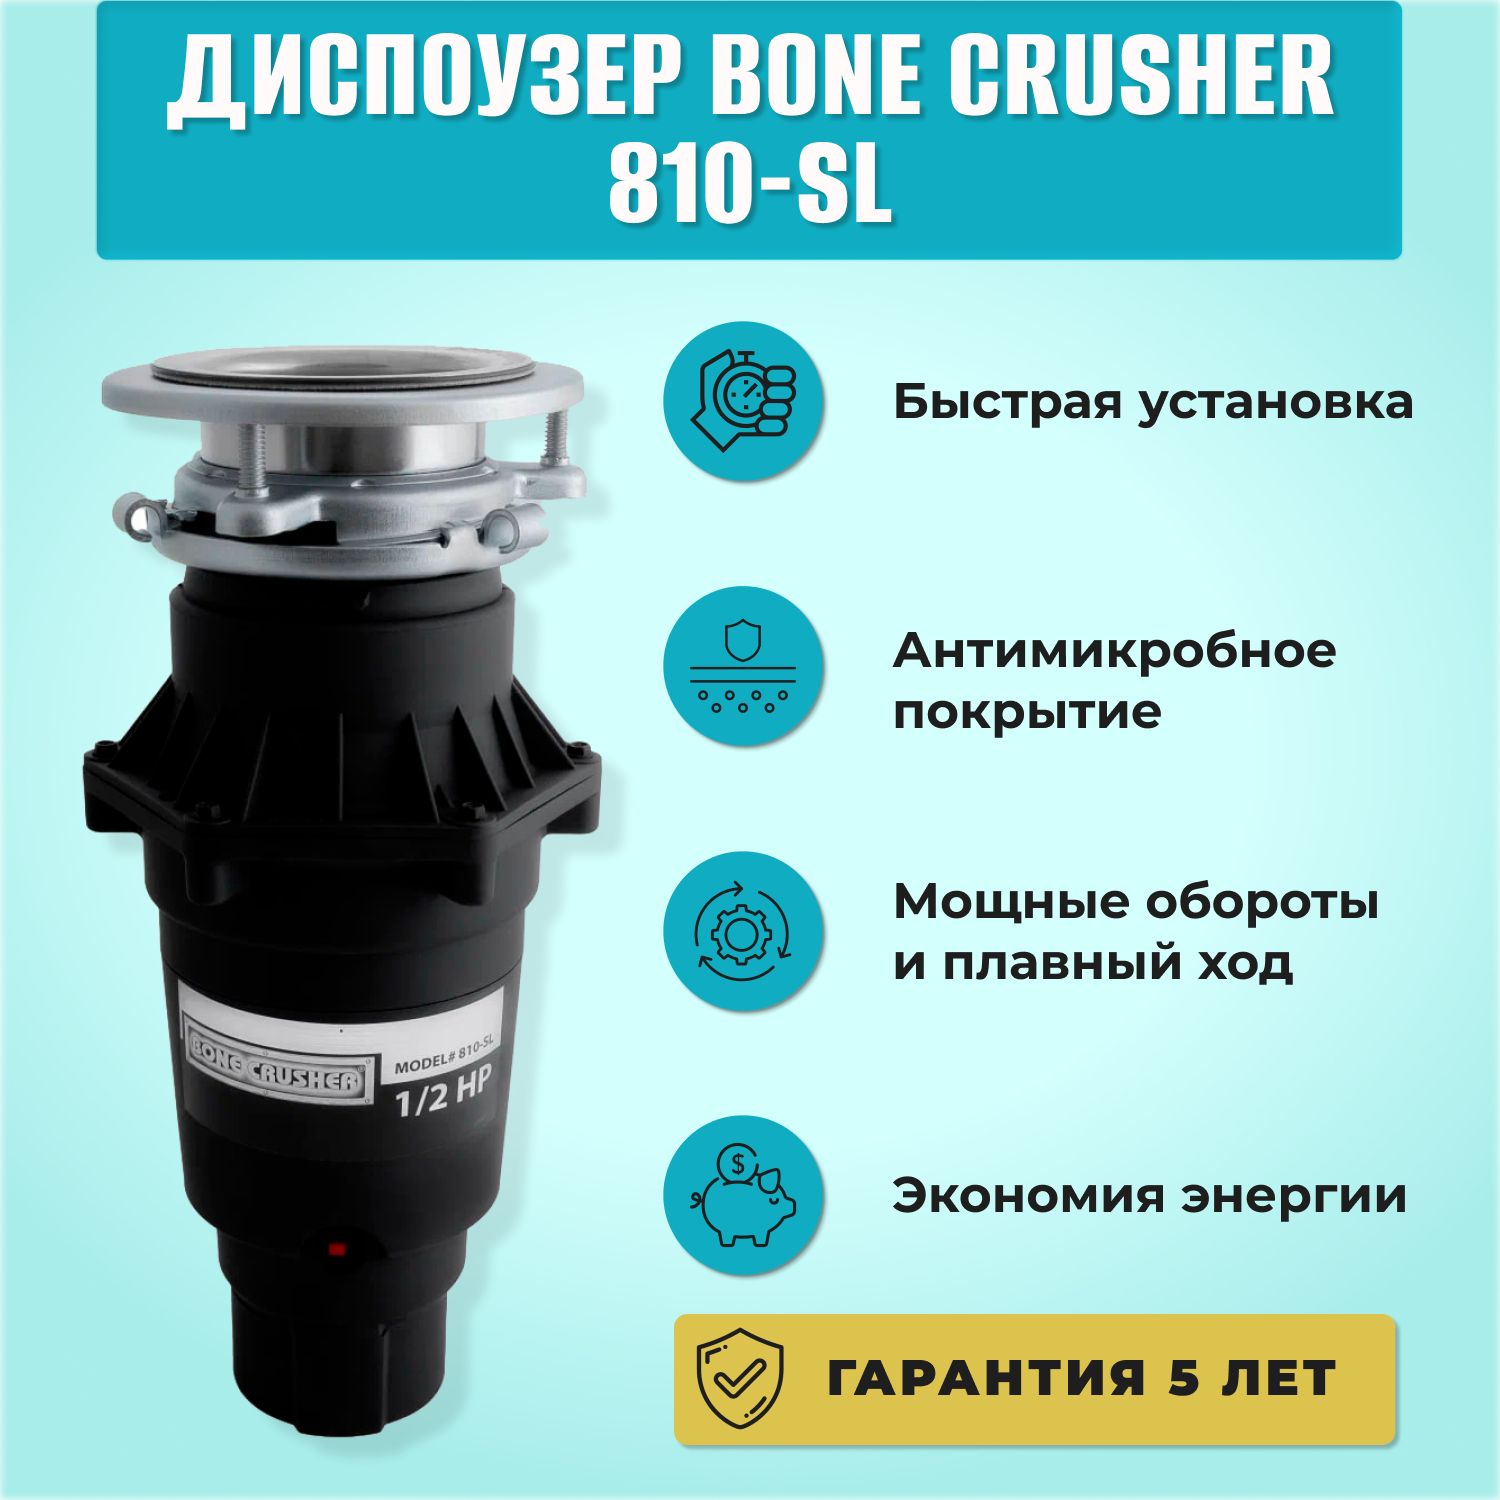 Bone crusher 810 slim. Bone crusher BC 810. Bone crusher 810/Slim line. Bone crusher BC 810 Slim line. Bone crusher BC-810-SL.